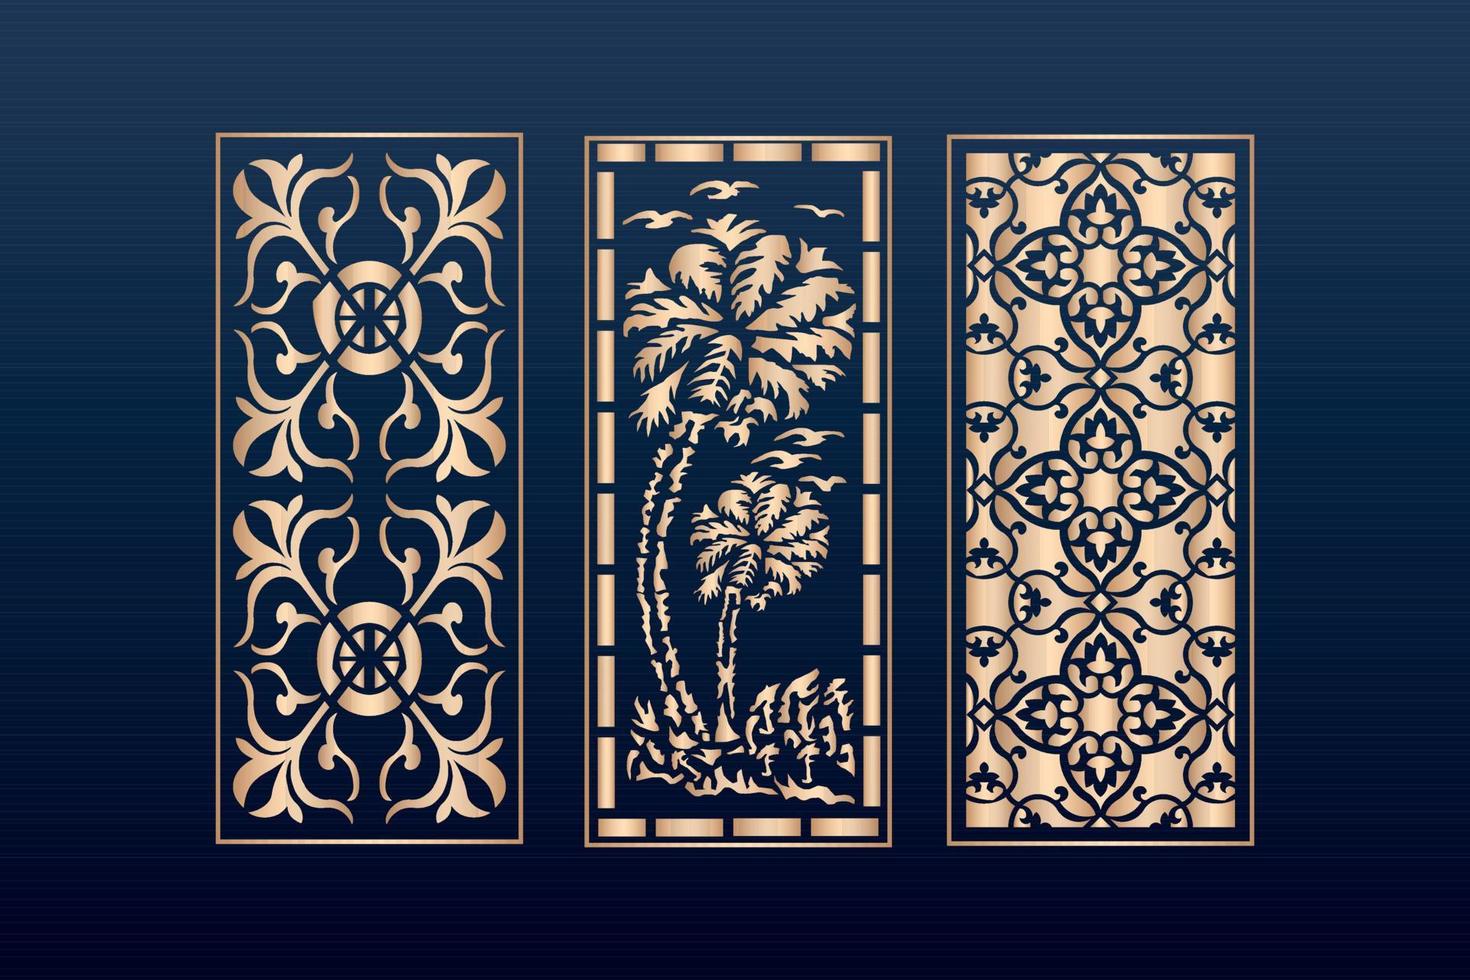 decoratieve laser gesneden panelen sjabloon met abstracte texture.dxf geometrische en bloemen lasersnijden, abstracte snijpanelen sjabloon islamitisch vector